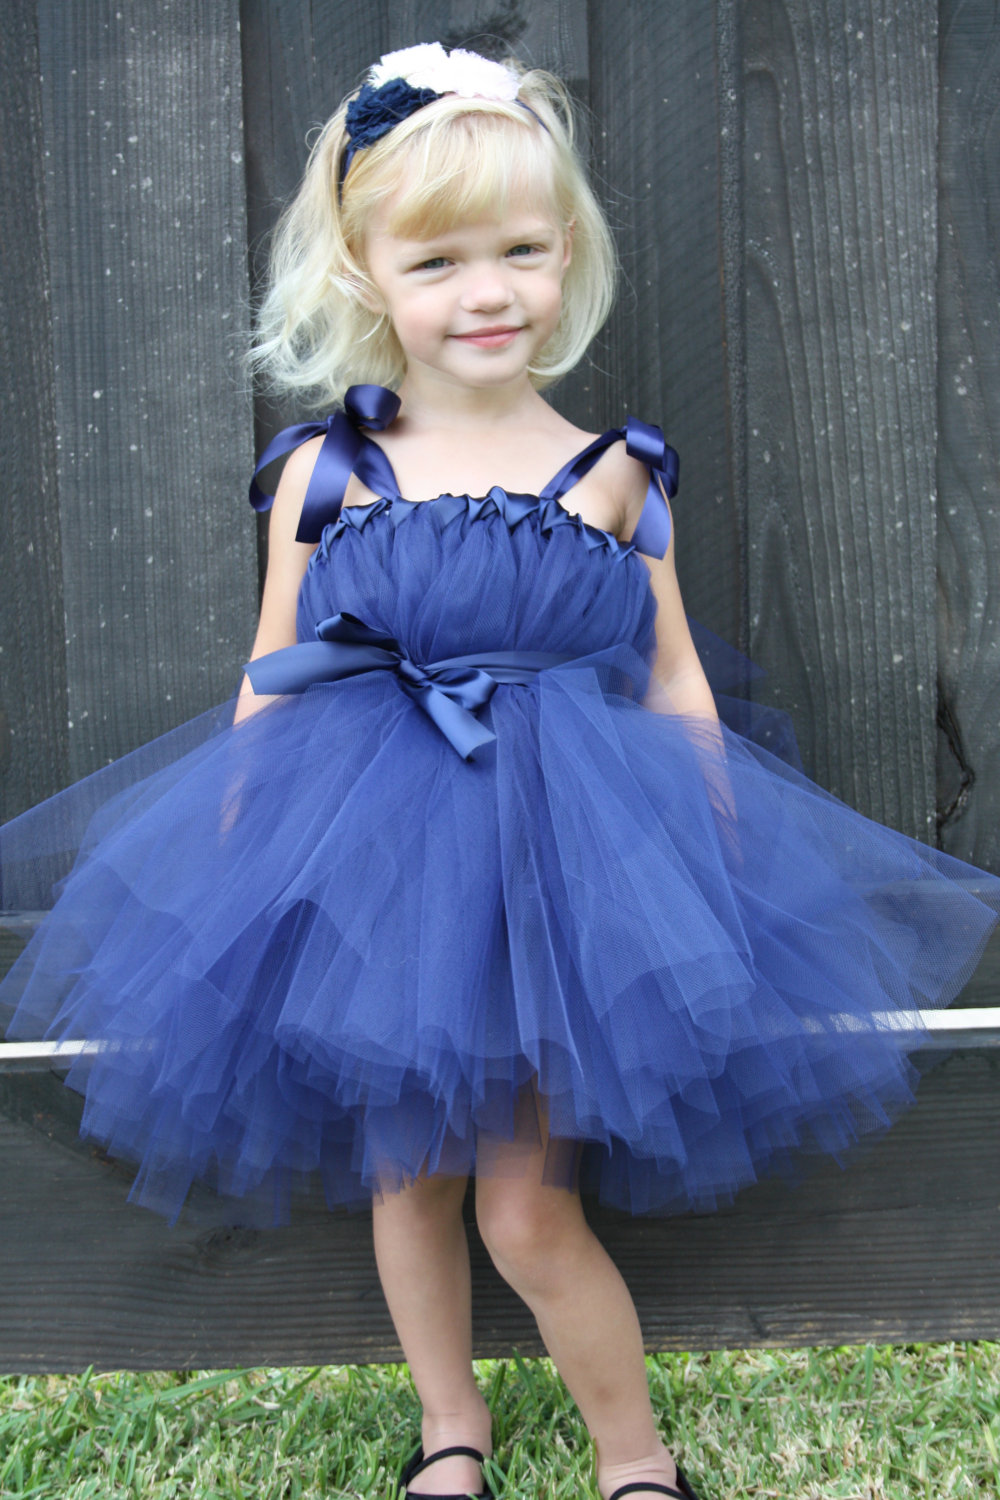 Black Blue Cute Toddler Baby Girl Fashion Dress Princess Tutu Girls Clothes Infant Dresses For Party Vestidos Infantil Festa